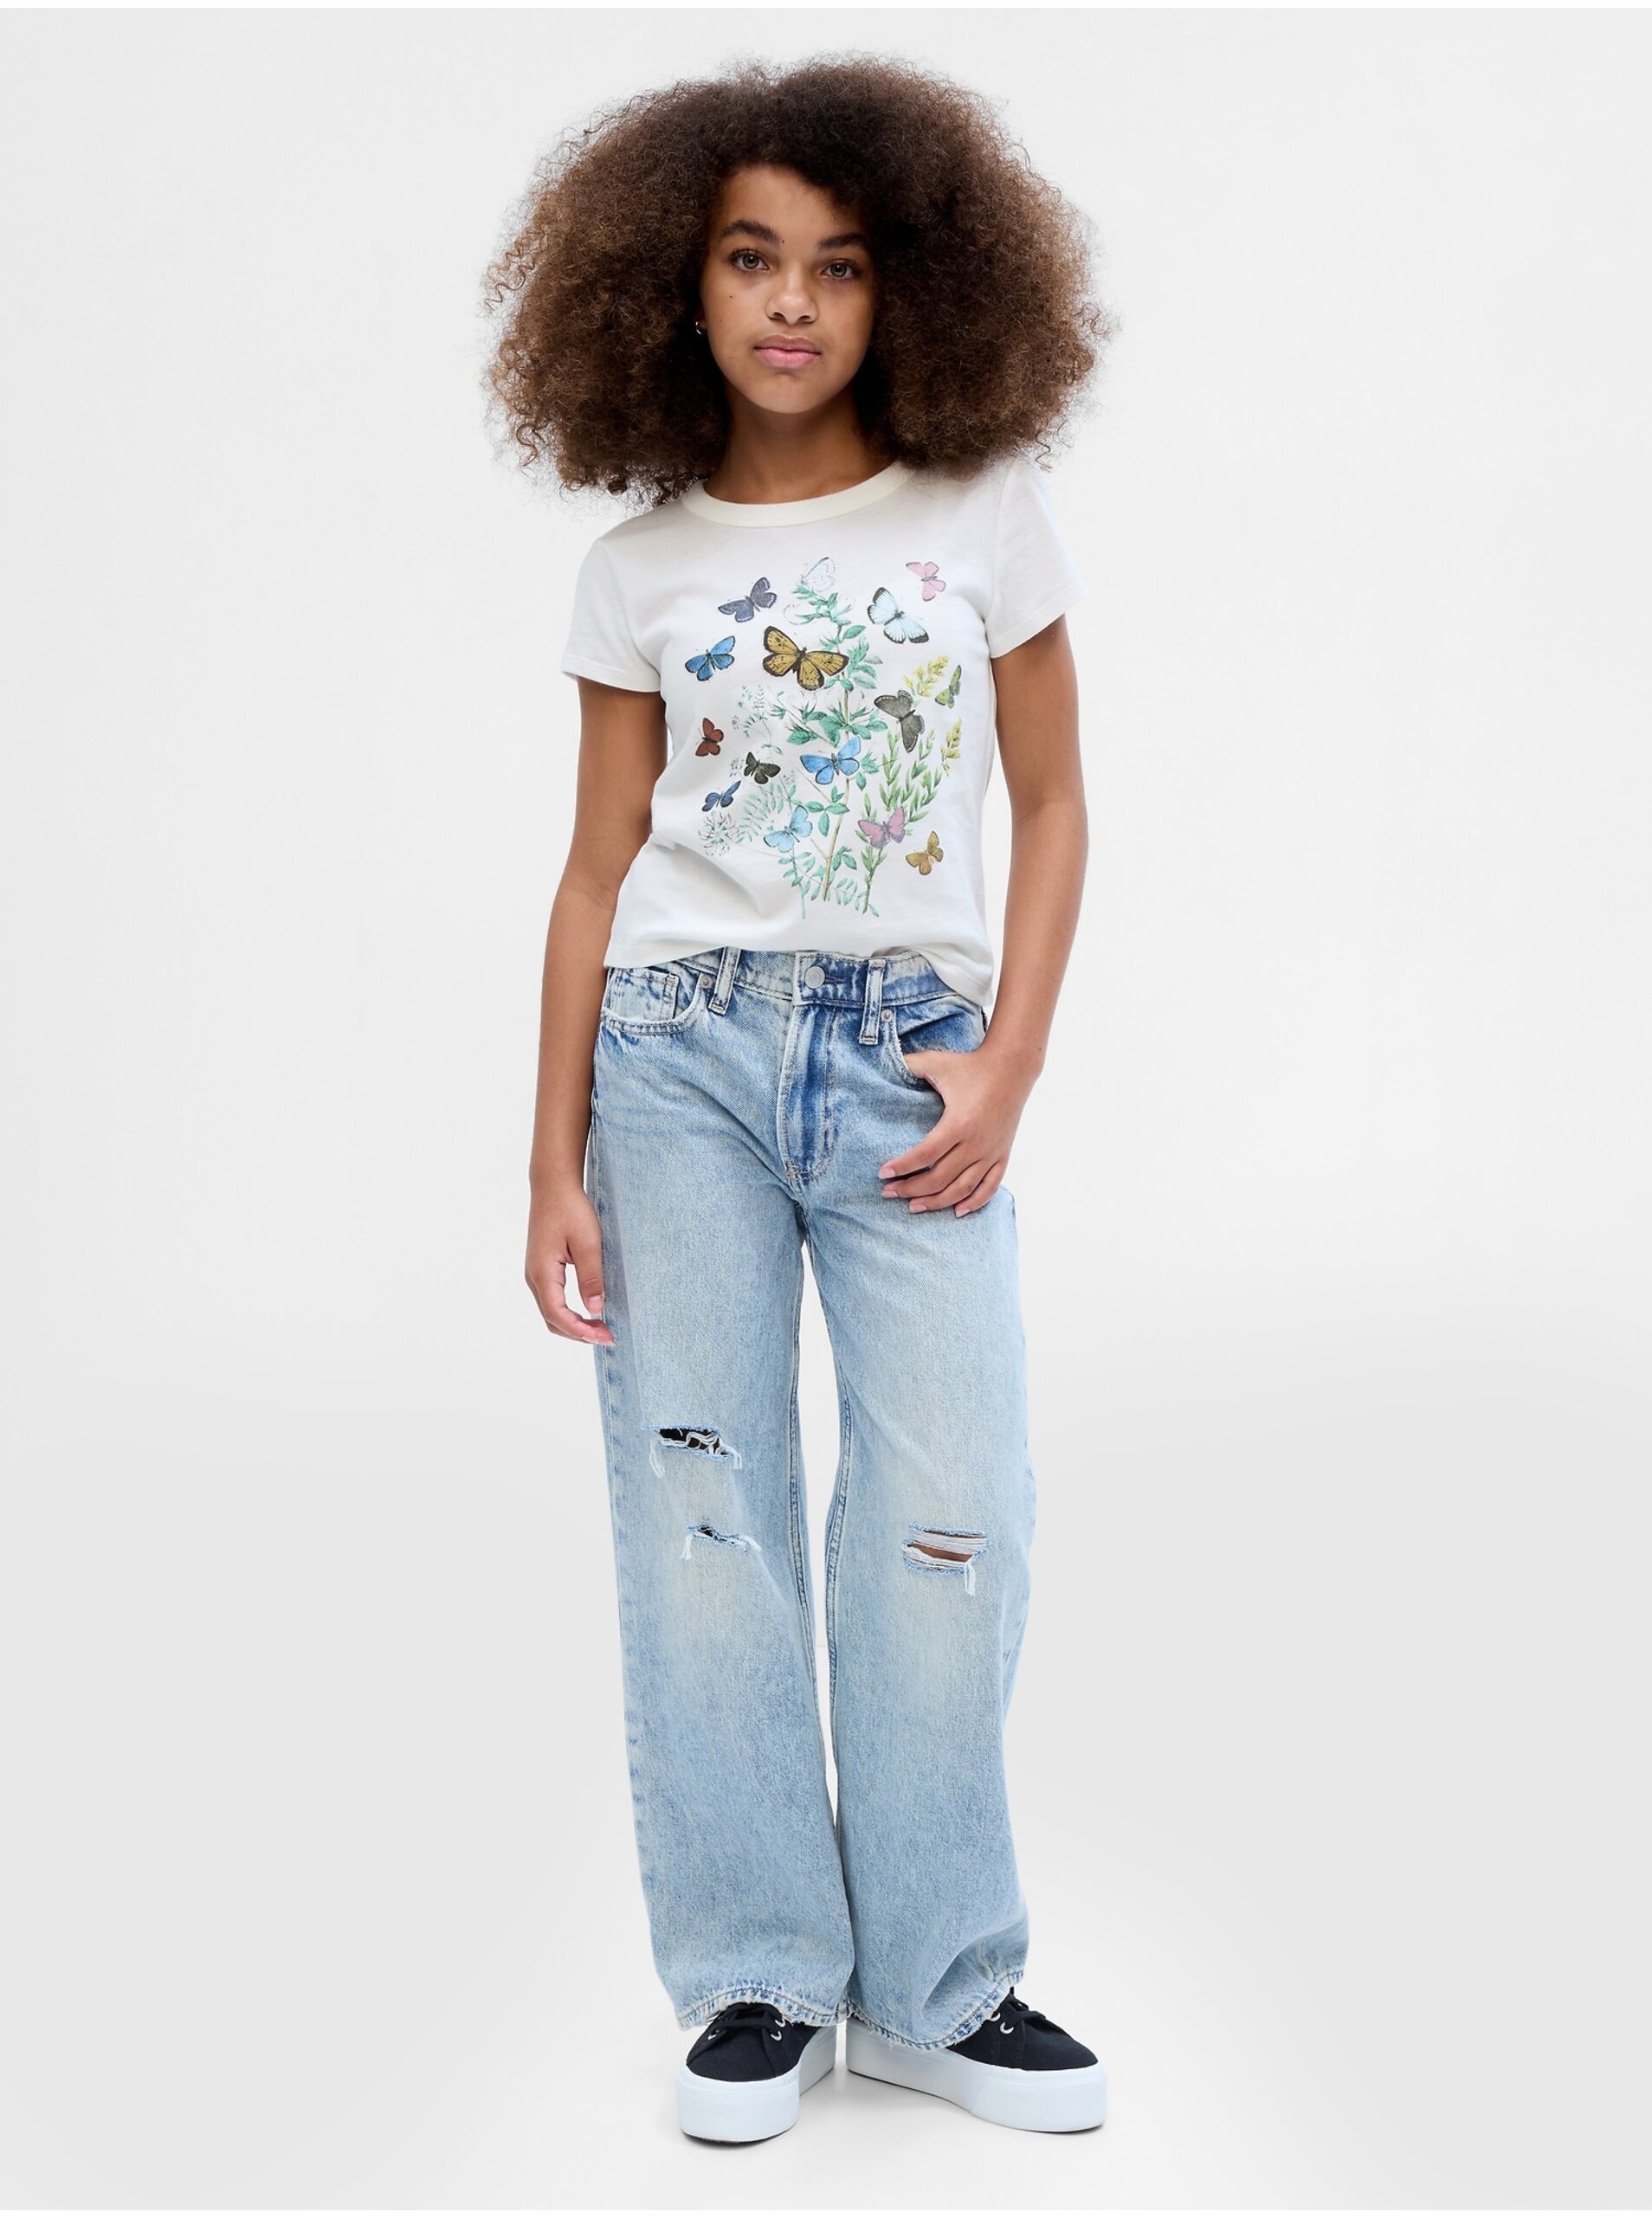 E-shop Biele dievčenské tričko s potlačou GAP